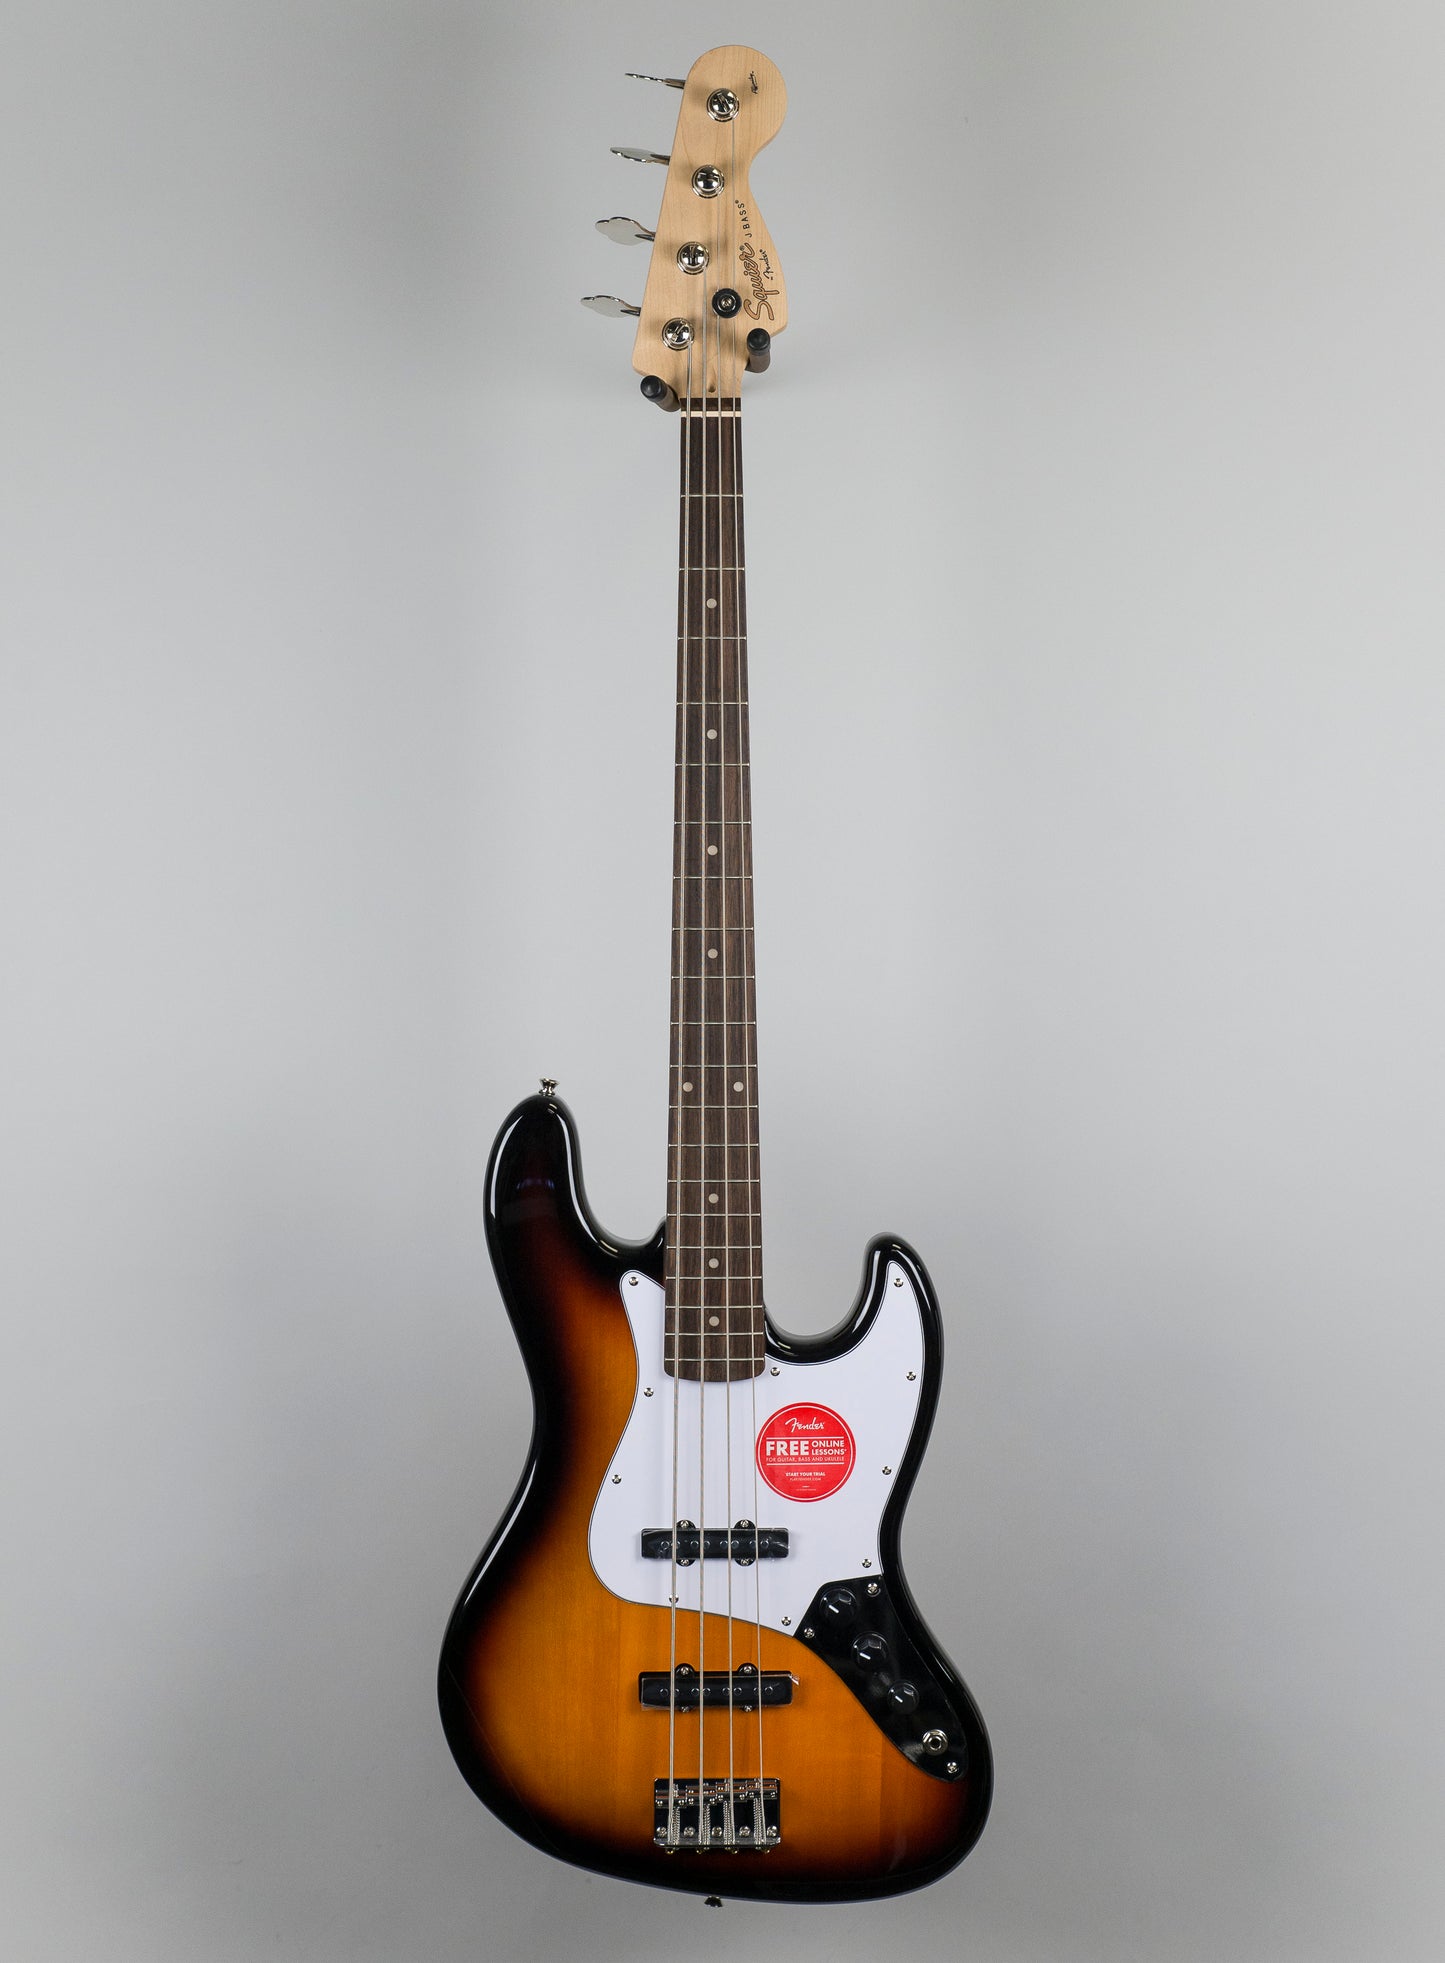 Squier Affinity Series Jazz Bass Guitar in Brown Sunburst